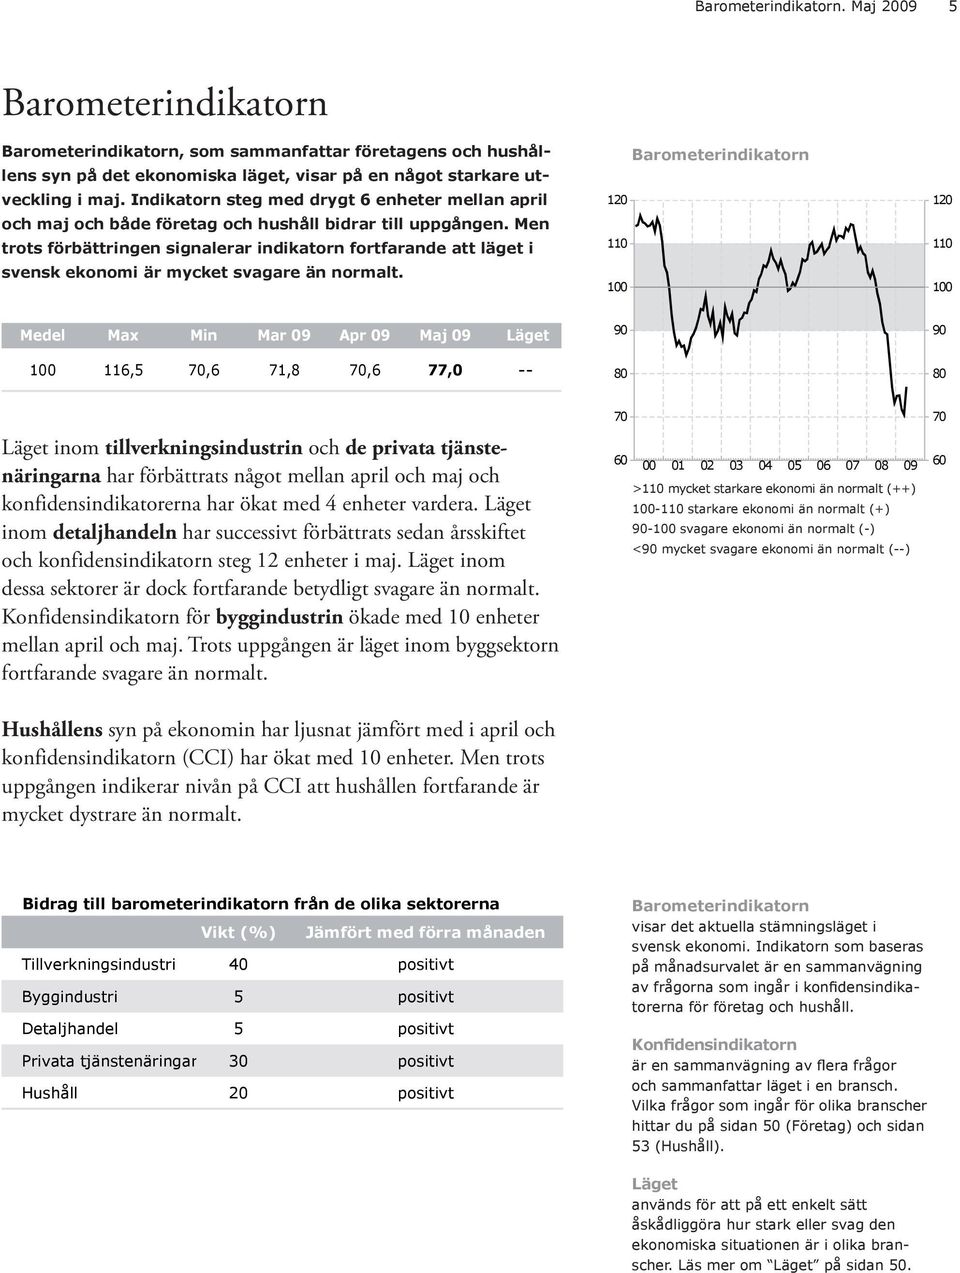 Men trots förbättringen signalerar indikatorn fortfarande att läget i svensk ekonomi är mycket svagare än normalt.